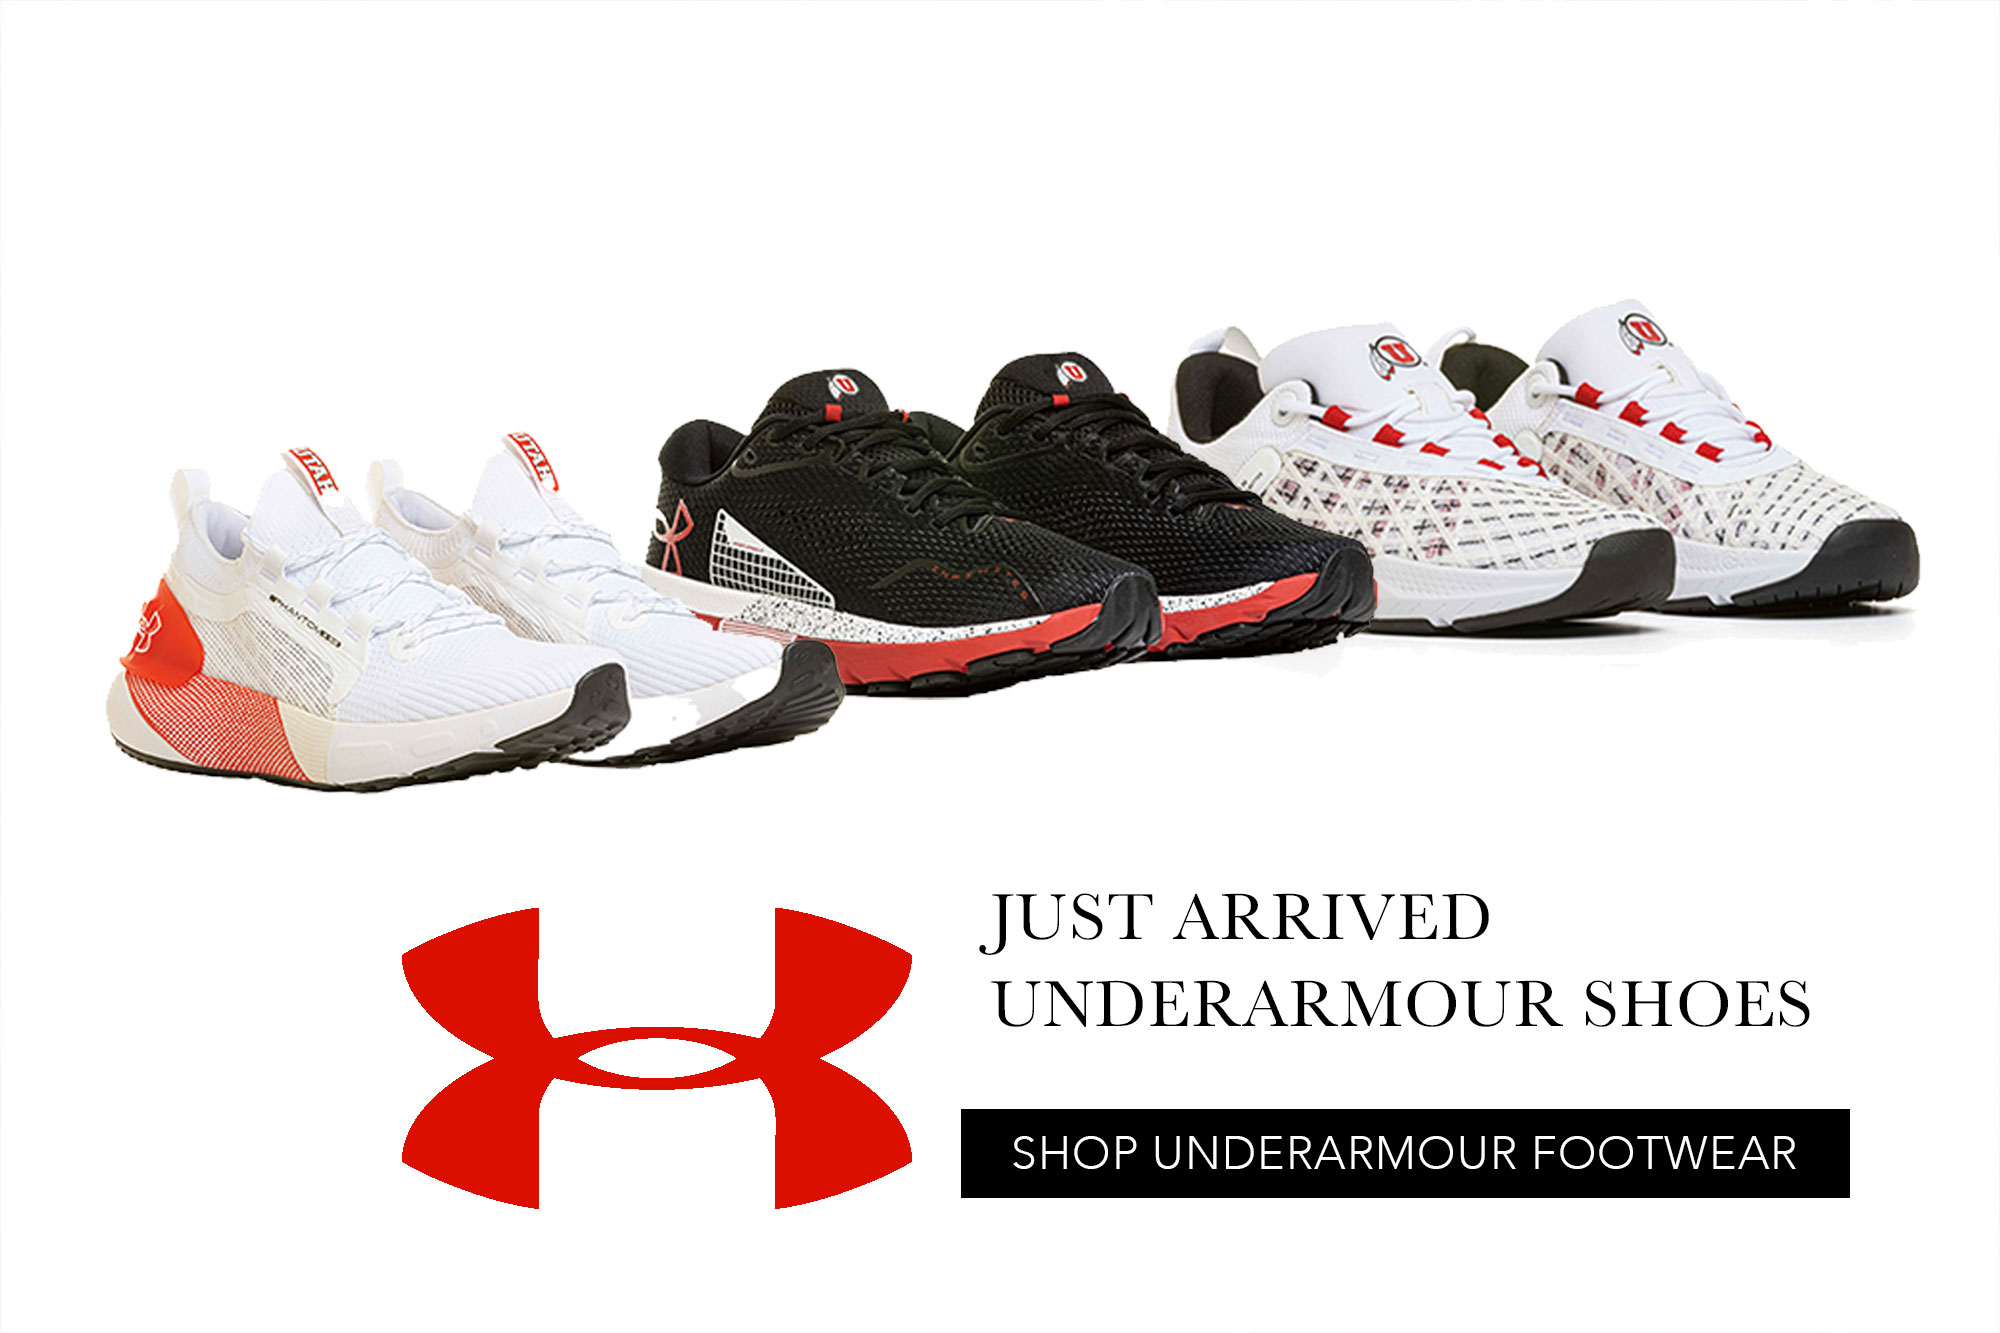 Shop UnderArmour Footwear